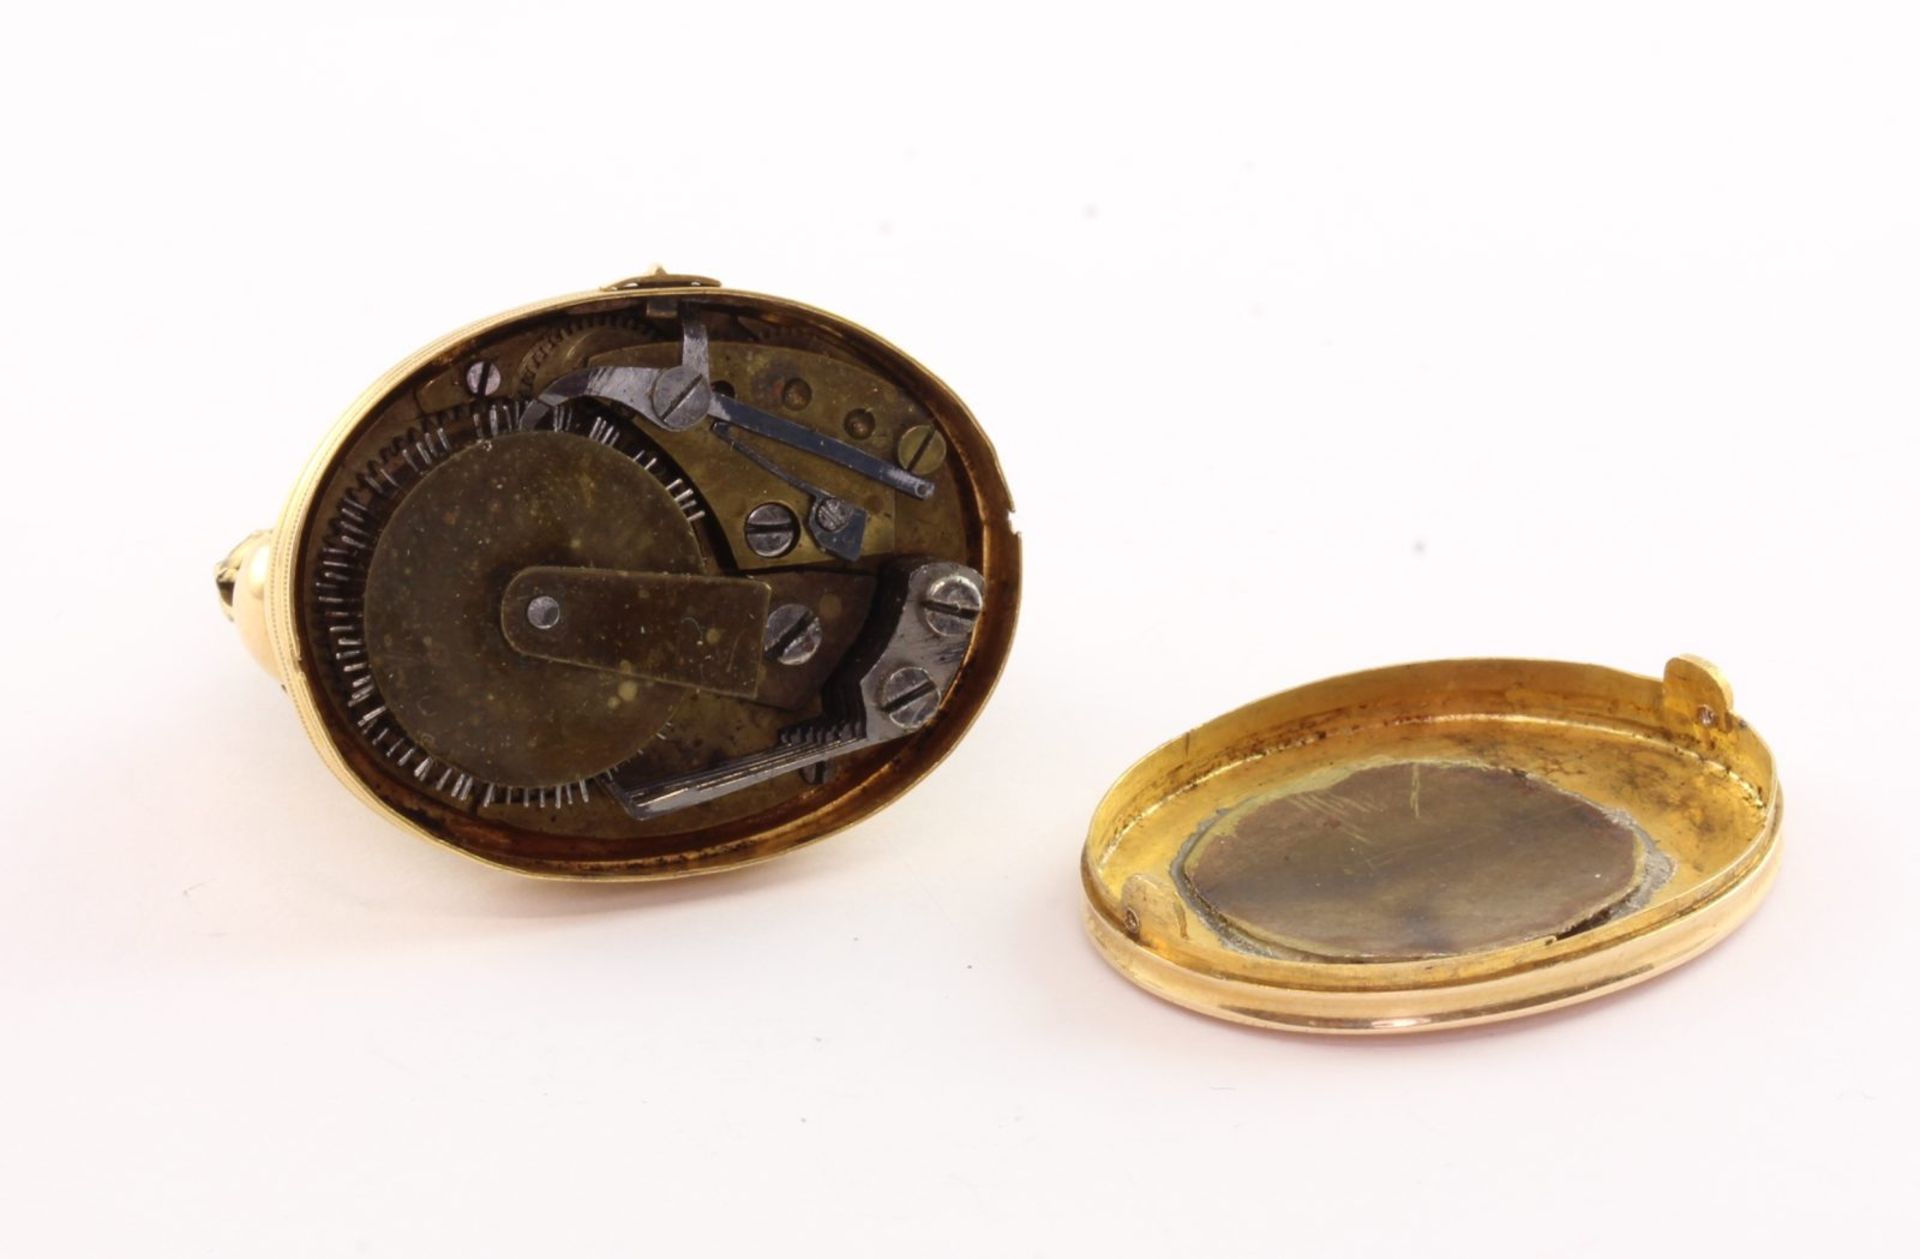 Seltene Miniaturspieluhr, 750/ooo Gelbgold, Frankreich/Schweiz, um 1800 - Bild 3 aus 5